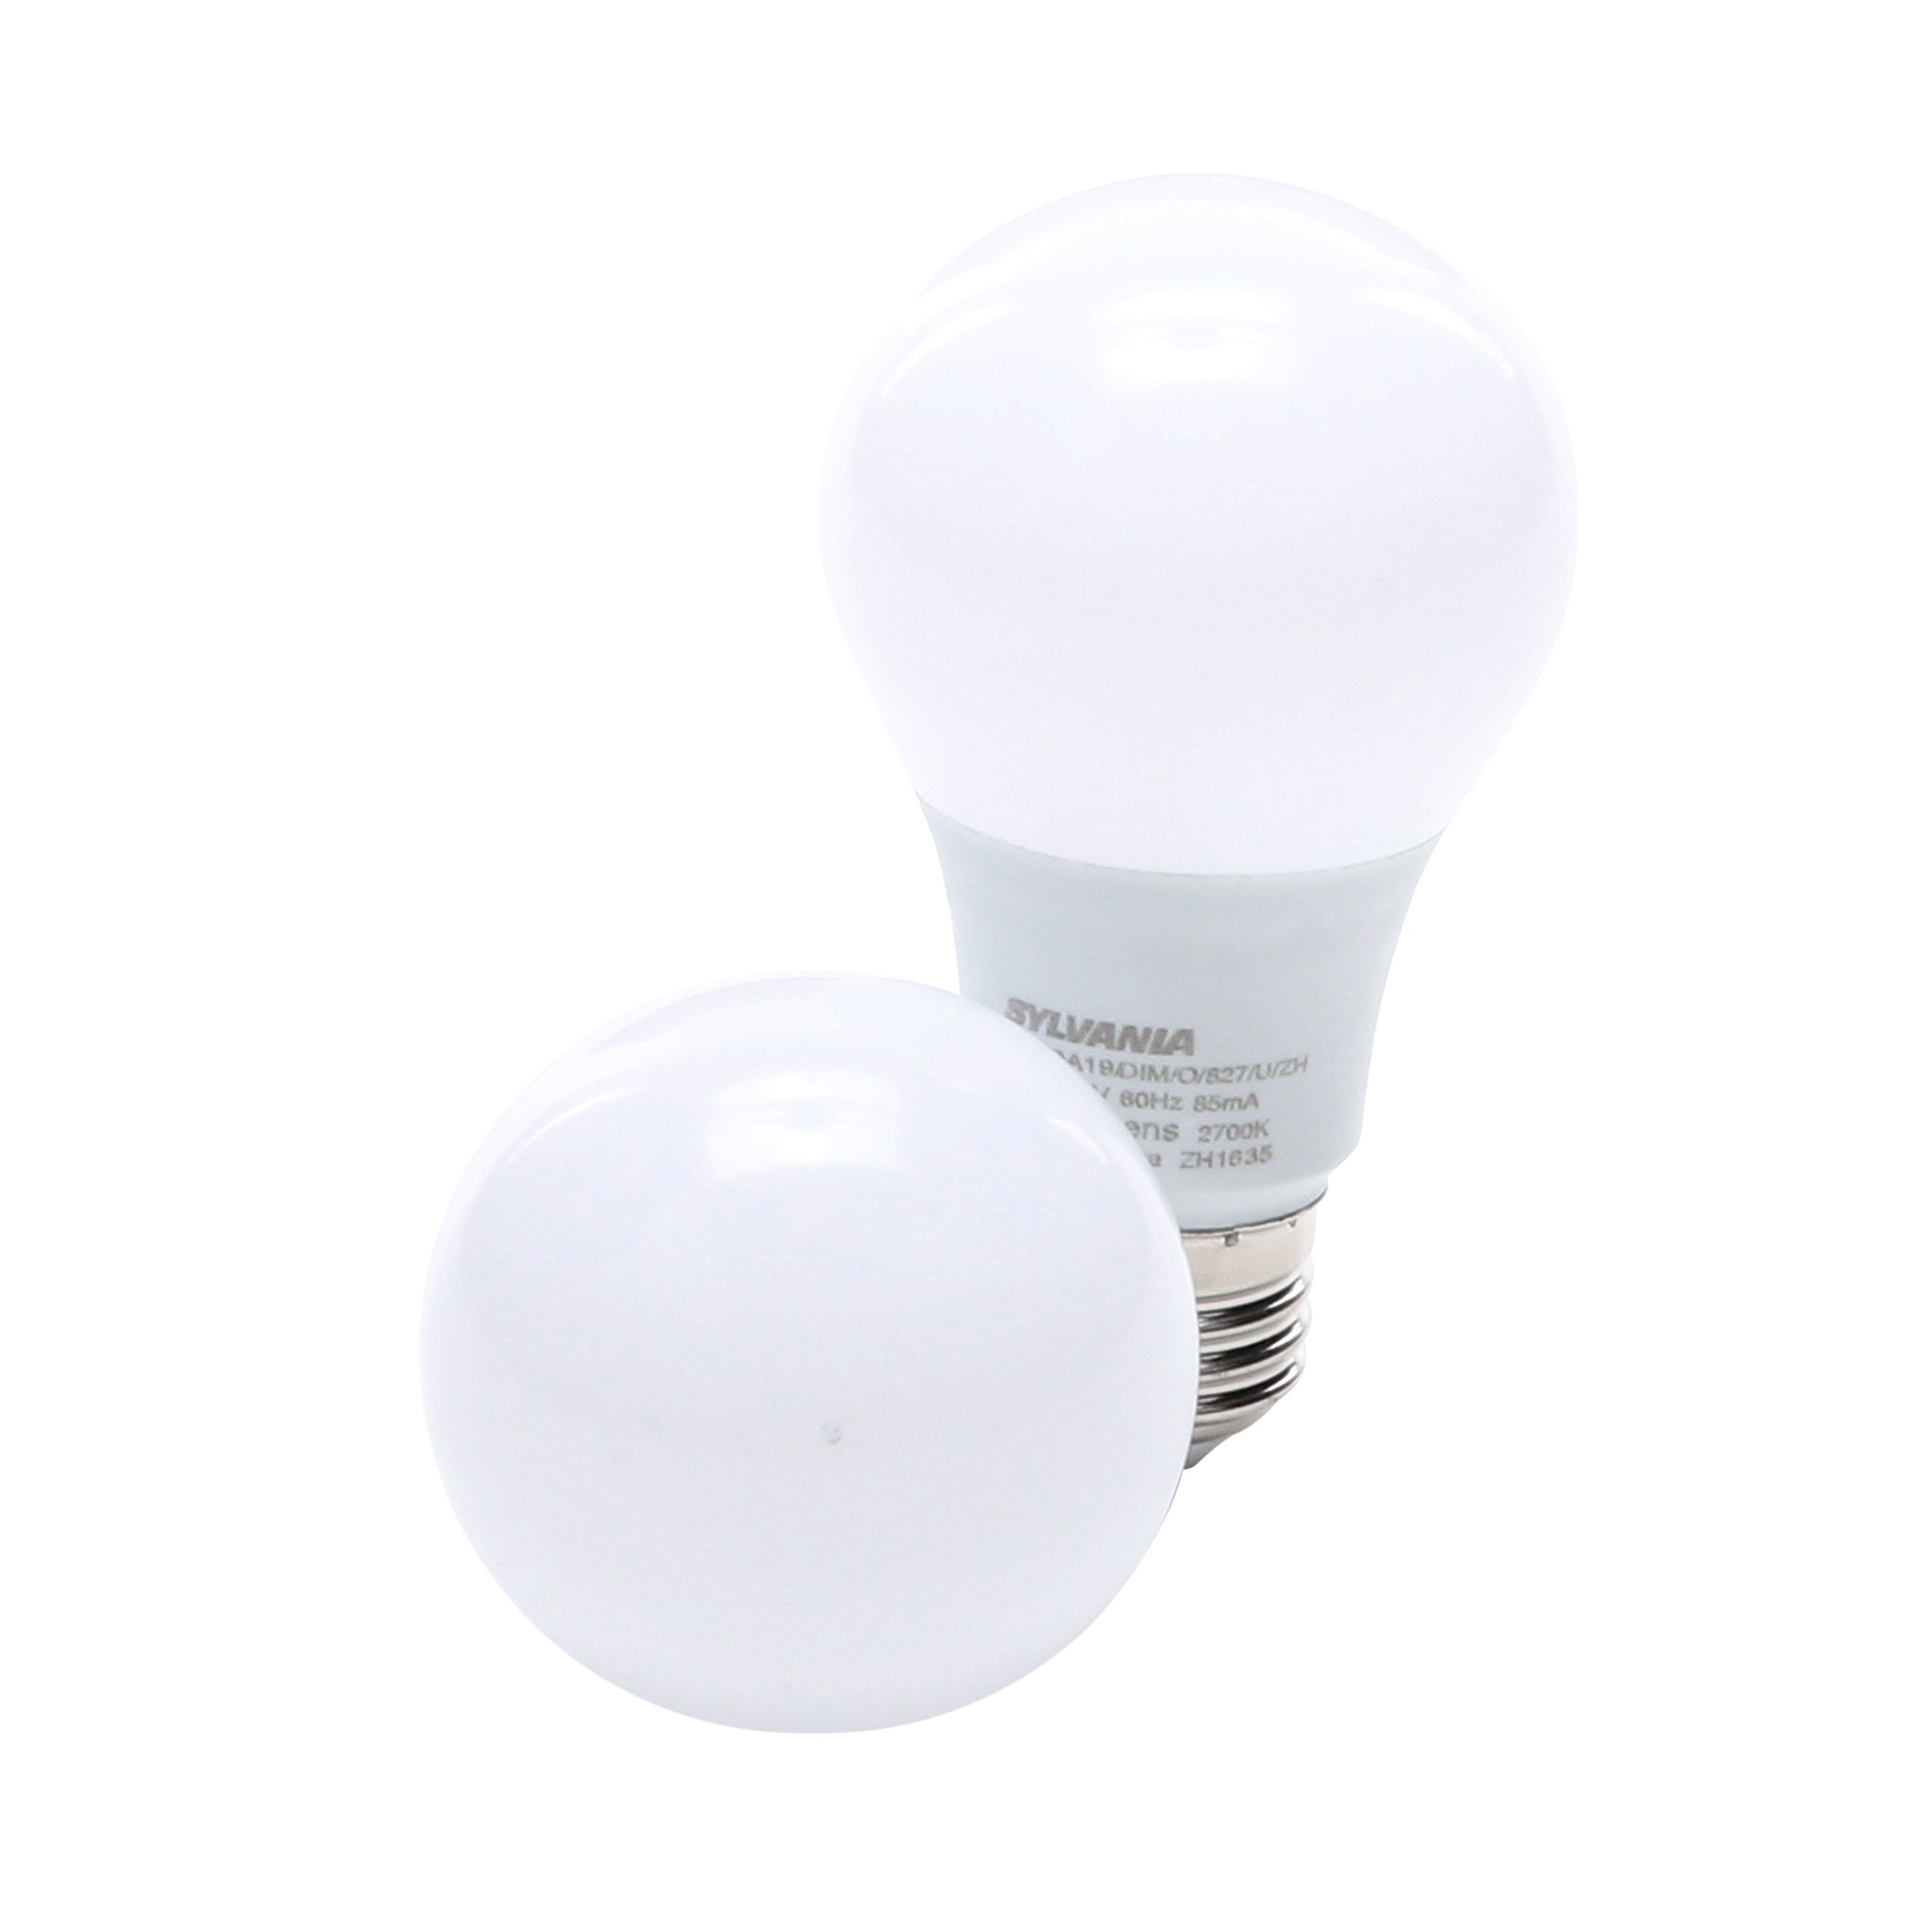 32 Pack MaxLite 100 Watt Equivalent 15W 2700K Soft White LED Light Bulb Dimmable 